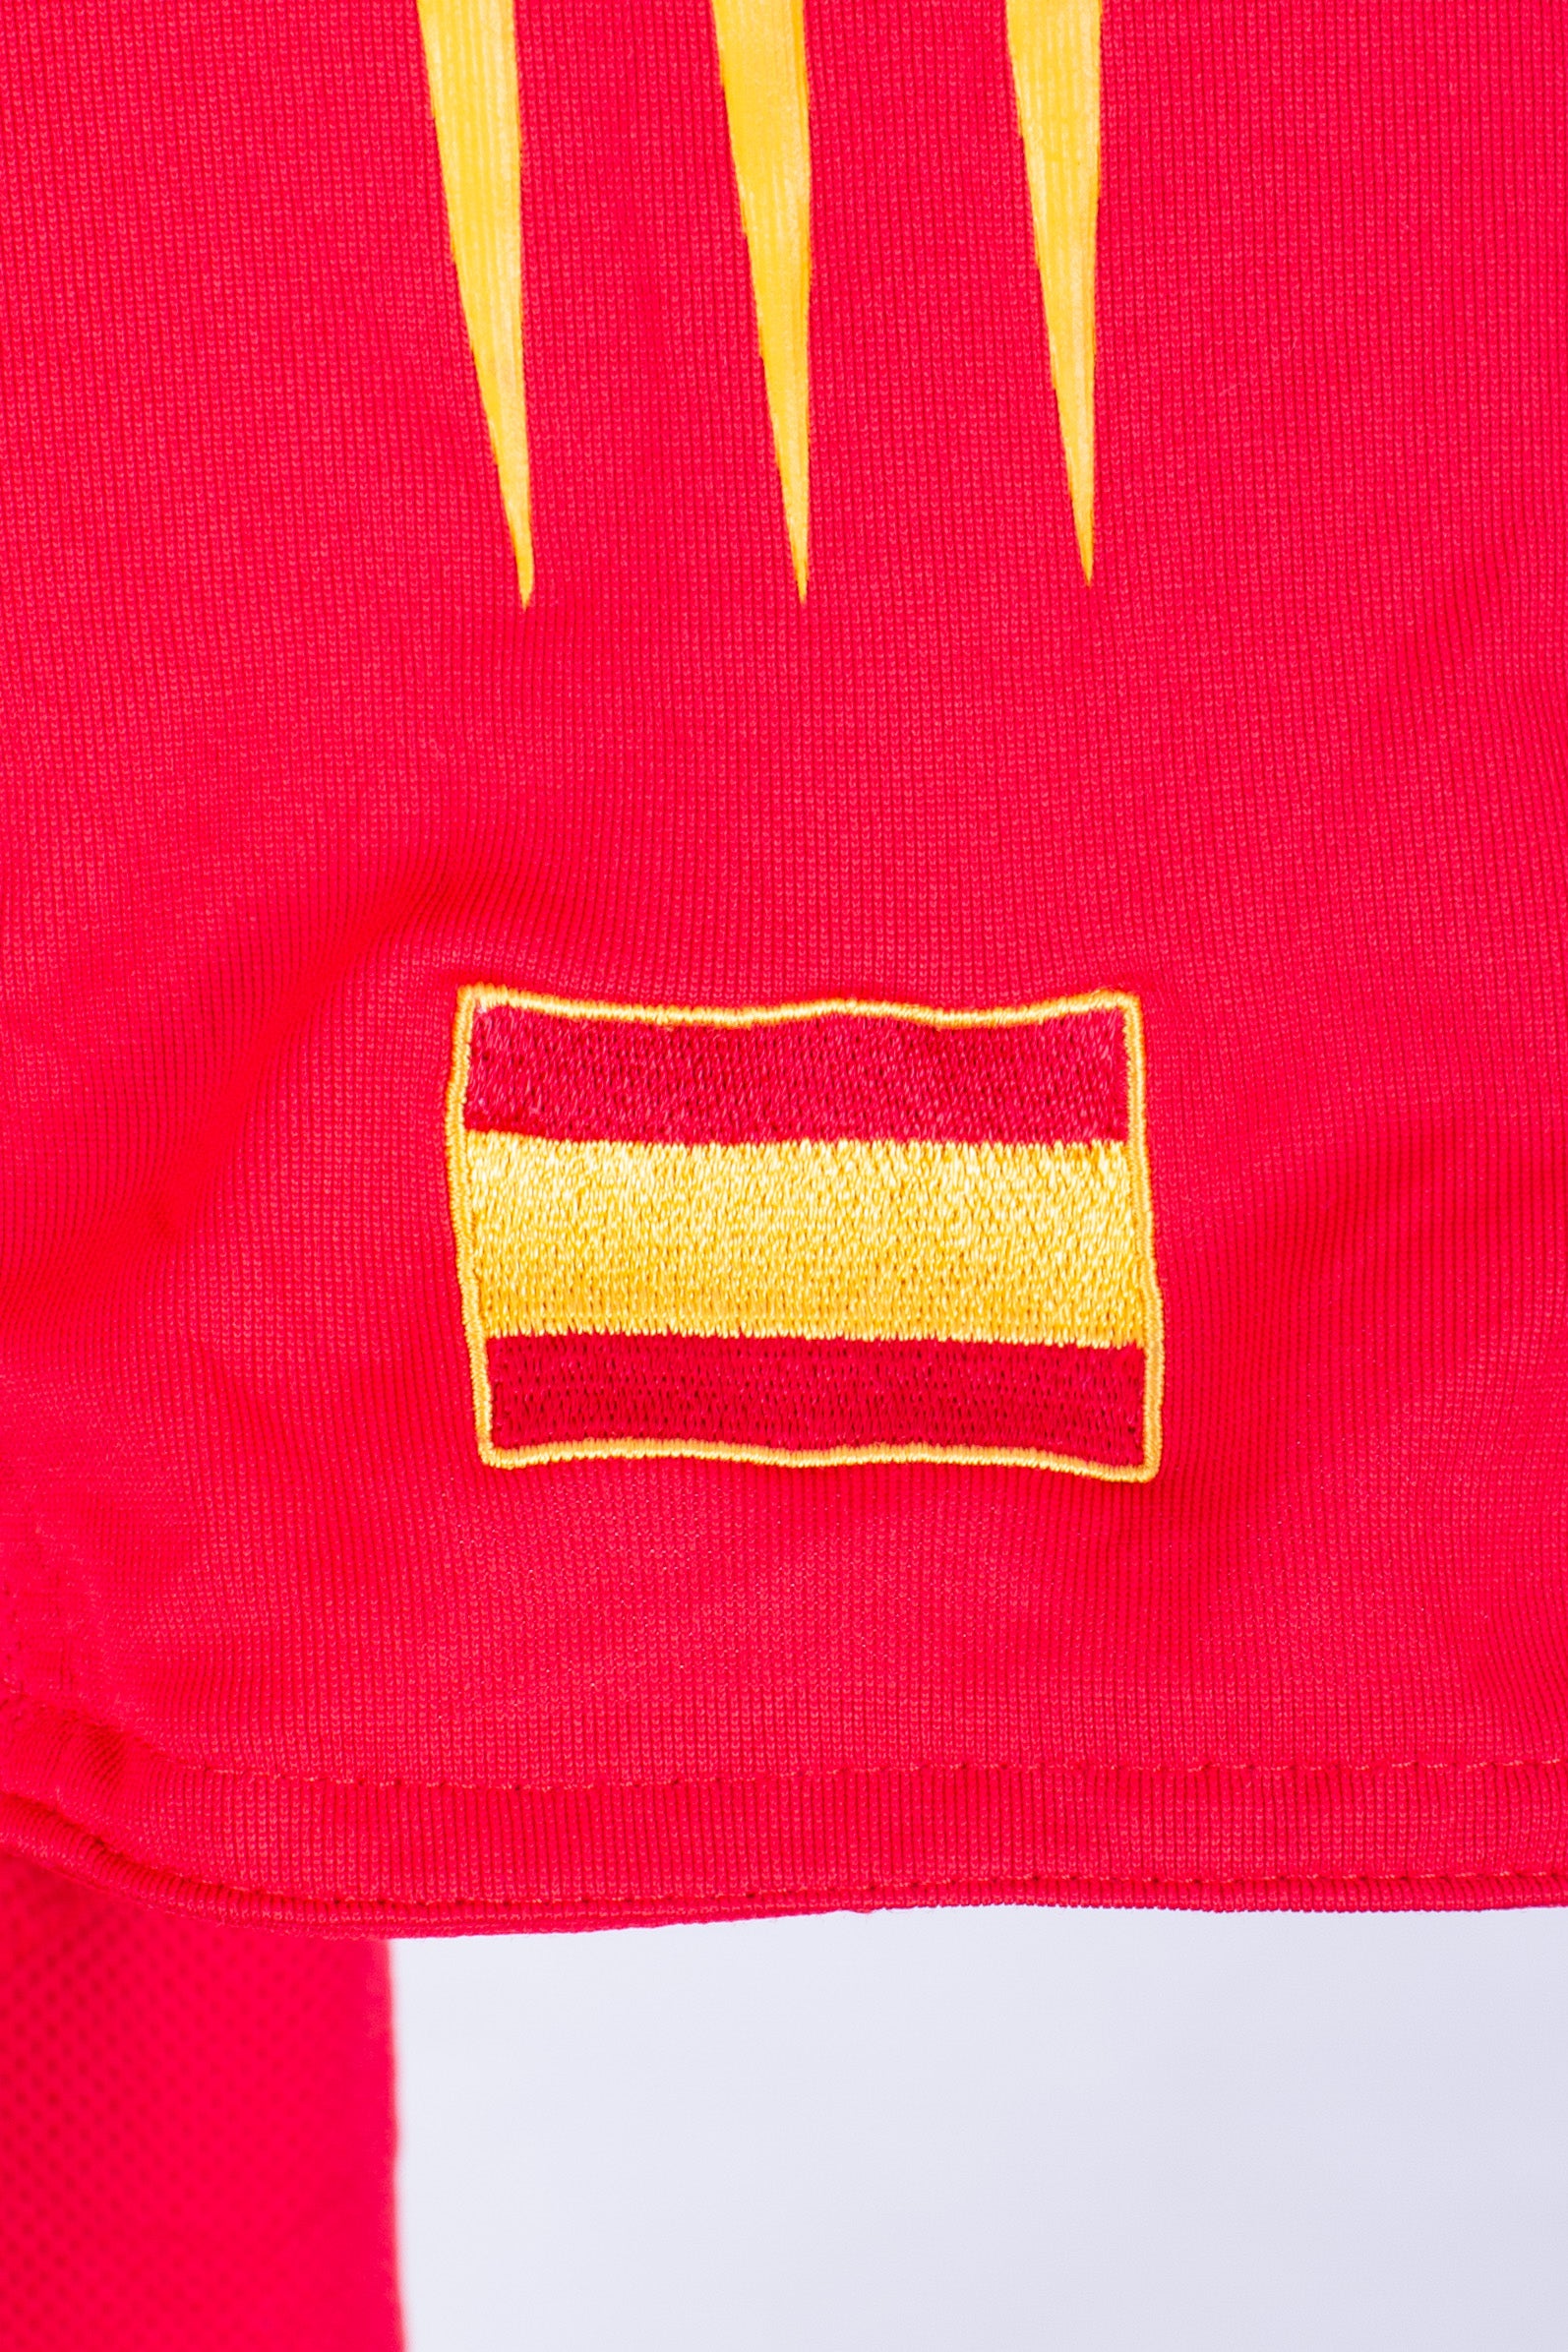 Spain 2004 Home Shirt